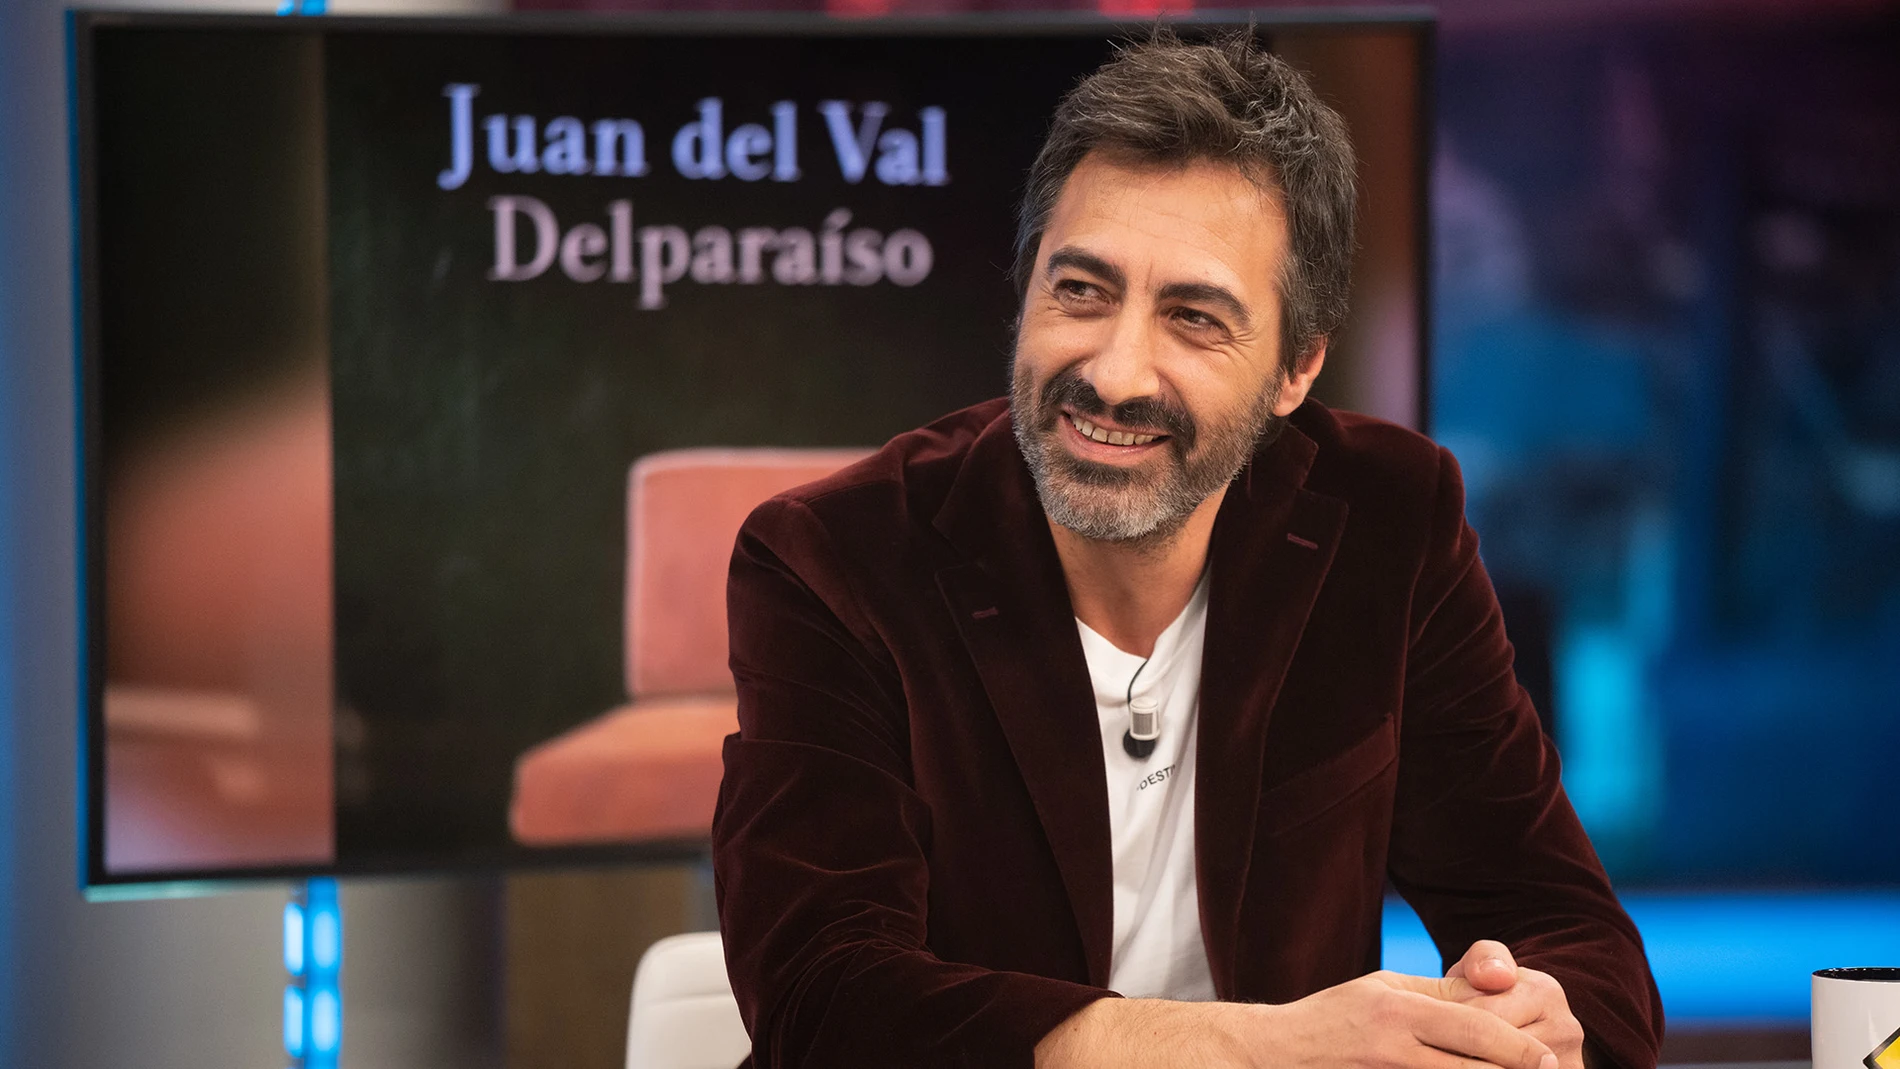 Juan del Val y su inspiración con el sexo y el deseo: "Tengo bastante imaginación y me interesa"